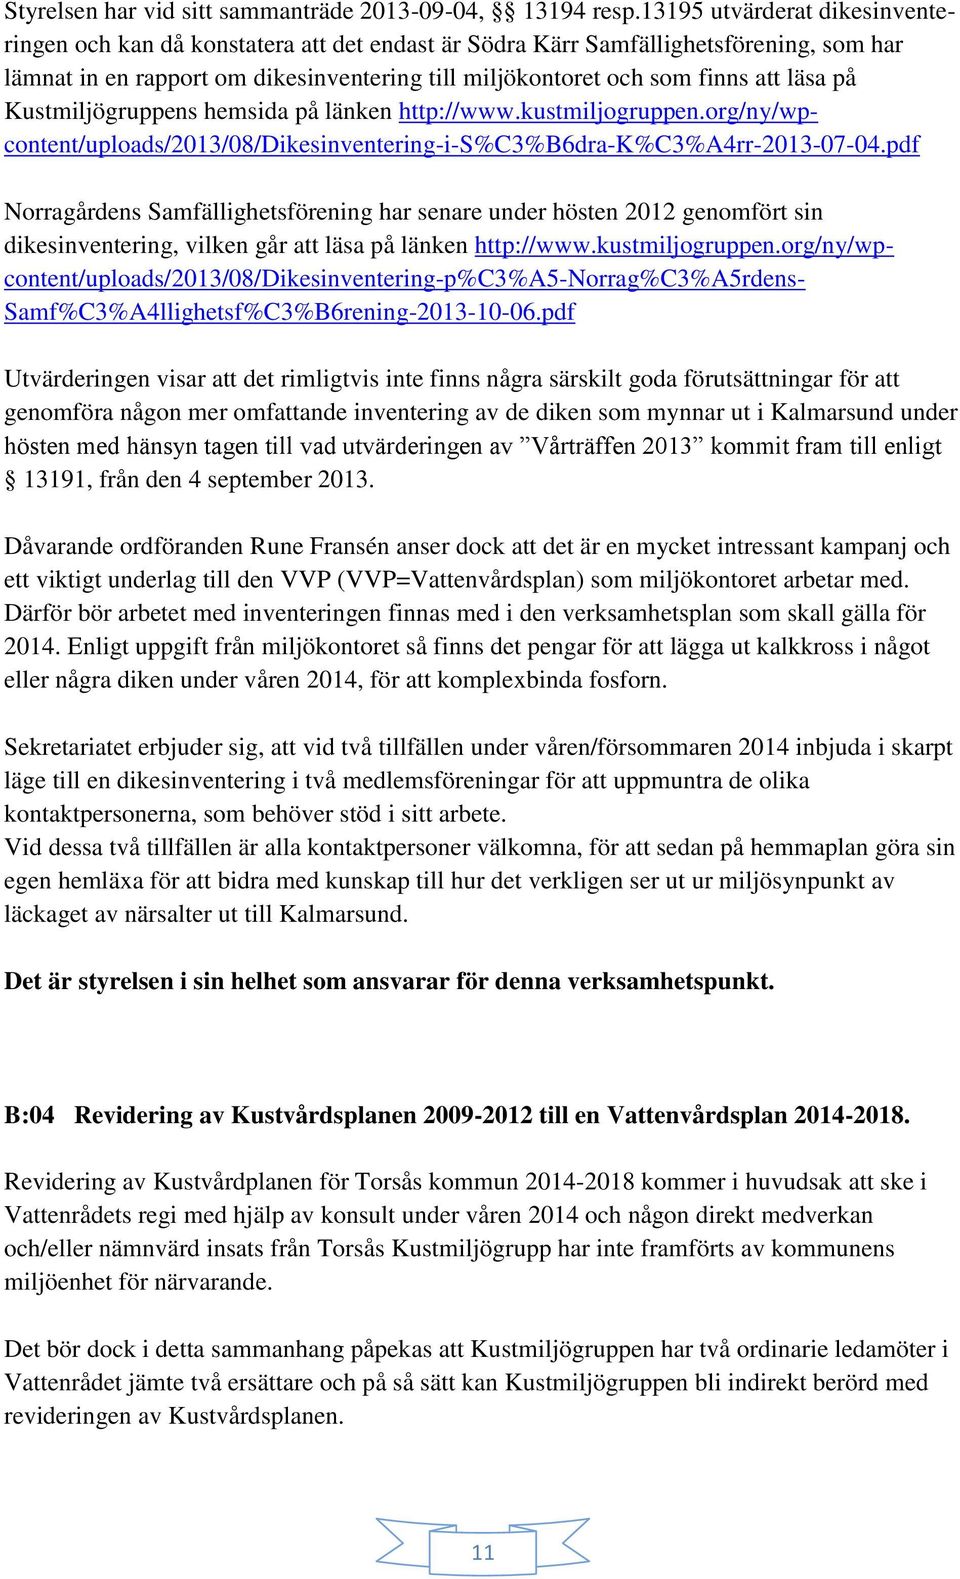 läsa på Kustmiljögruppens hemsida på länken http://www.kustmiljogruppen.org/ny/wpcontent/uploads/2013/08/dikesinventering-i-s%c3%b6dra-k%c3%a4rr-2013-07-04.